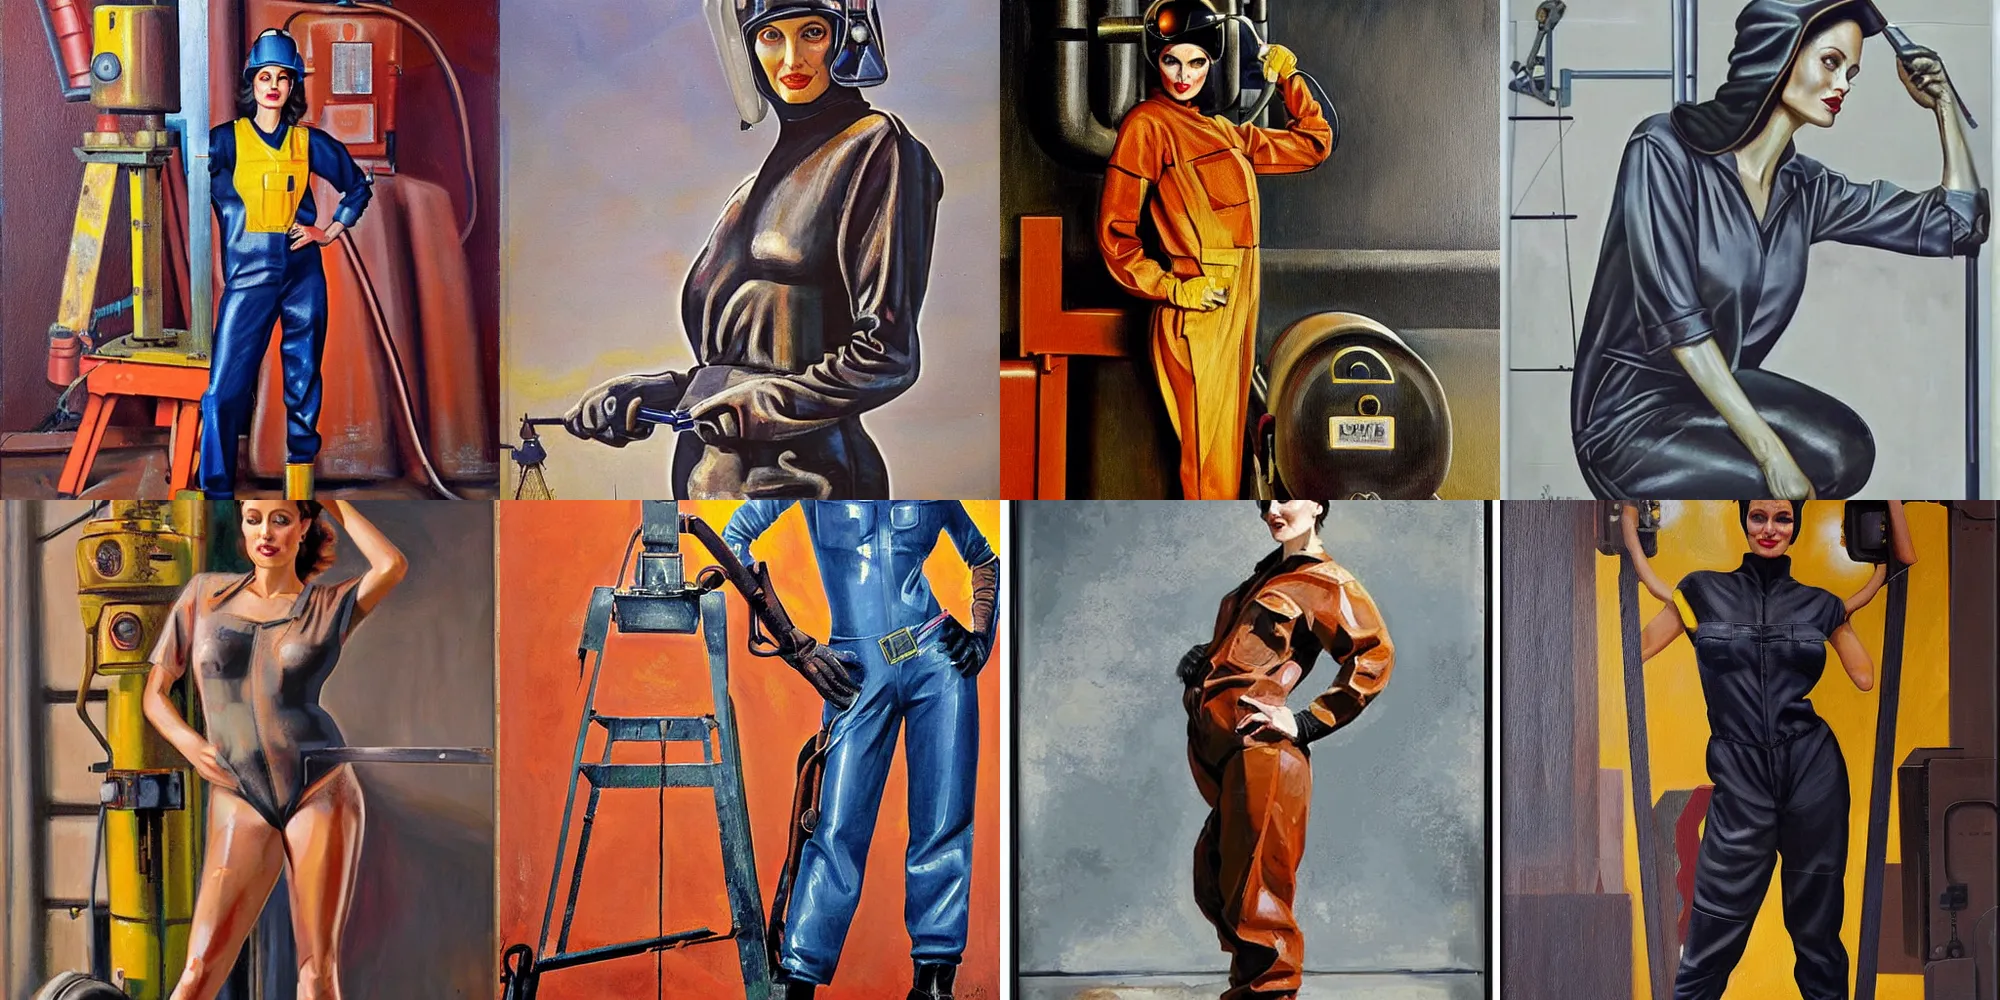 Prompt: symmetrical oil painting of full - body angelina jolie posing in steelworker welder costume by samokhvalov - 1 9 3 0 s